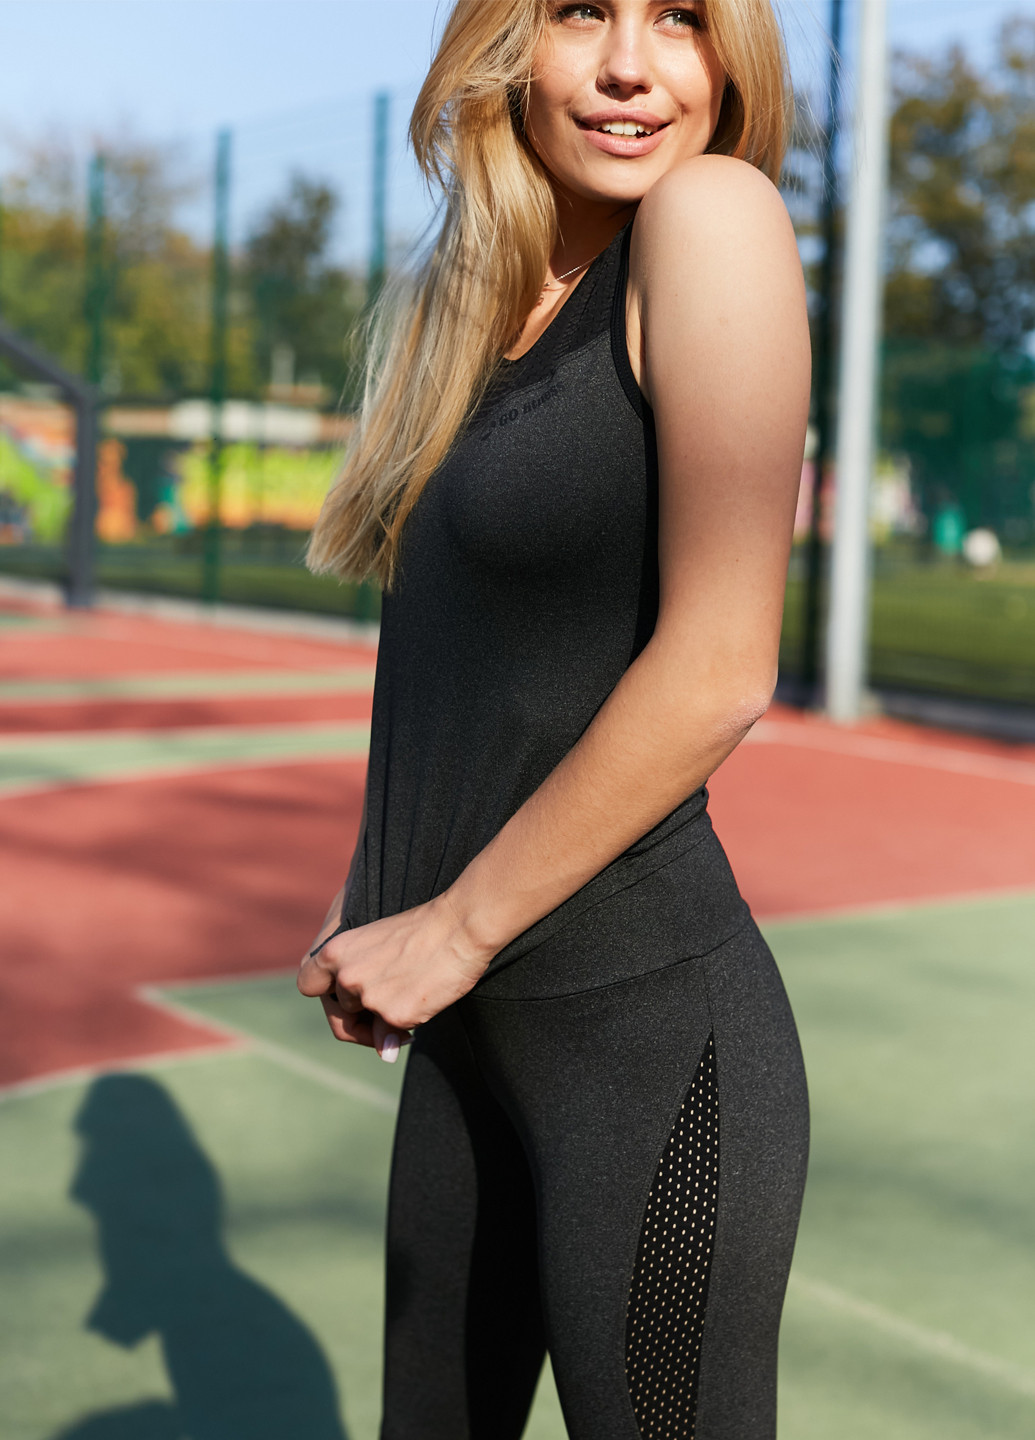 Женский спортивный костюм (комплект: майка + леггинсы) для занятий спортом GF SPORT брючный однотонный тёмно-серый спортивный полиэстер